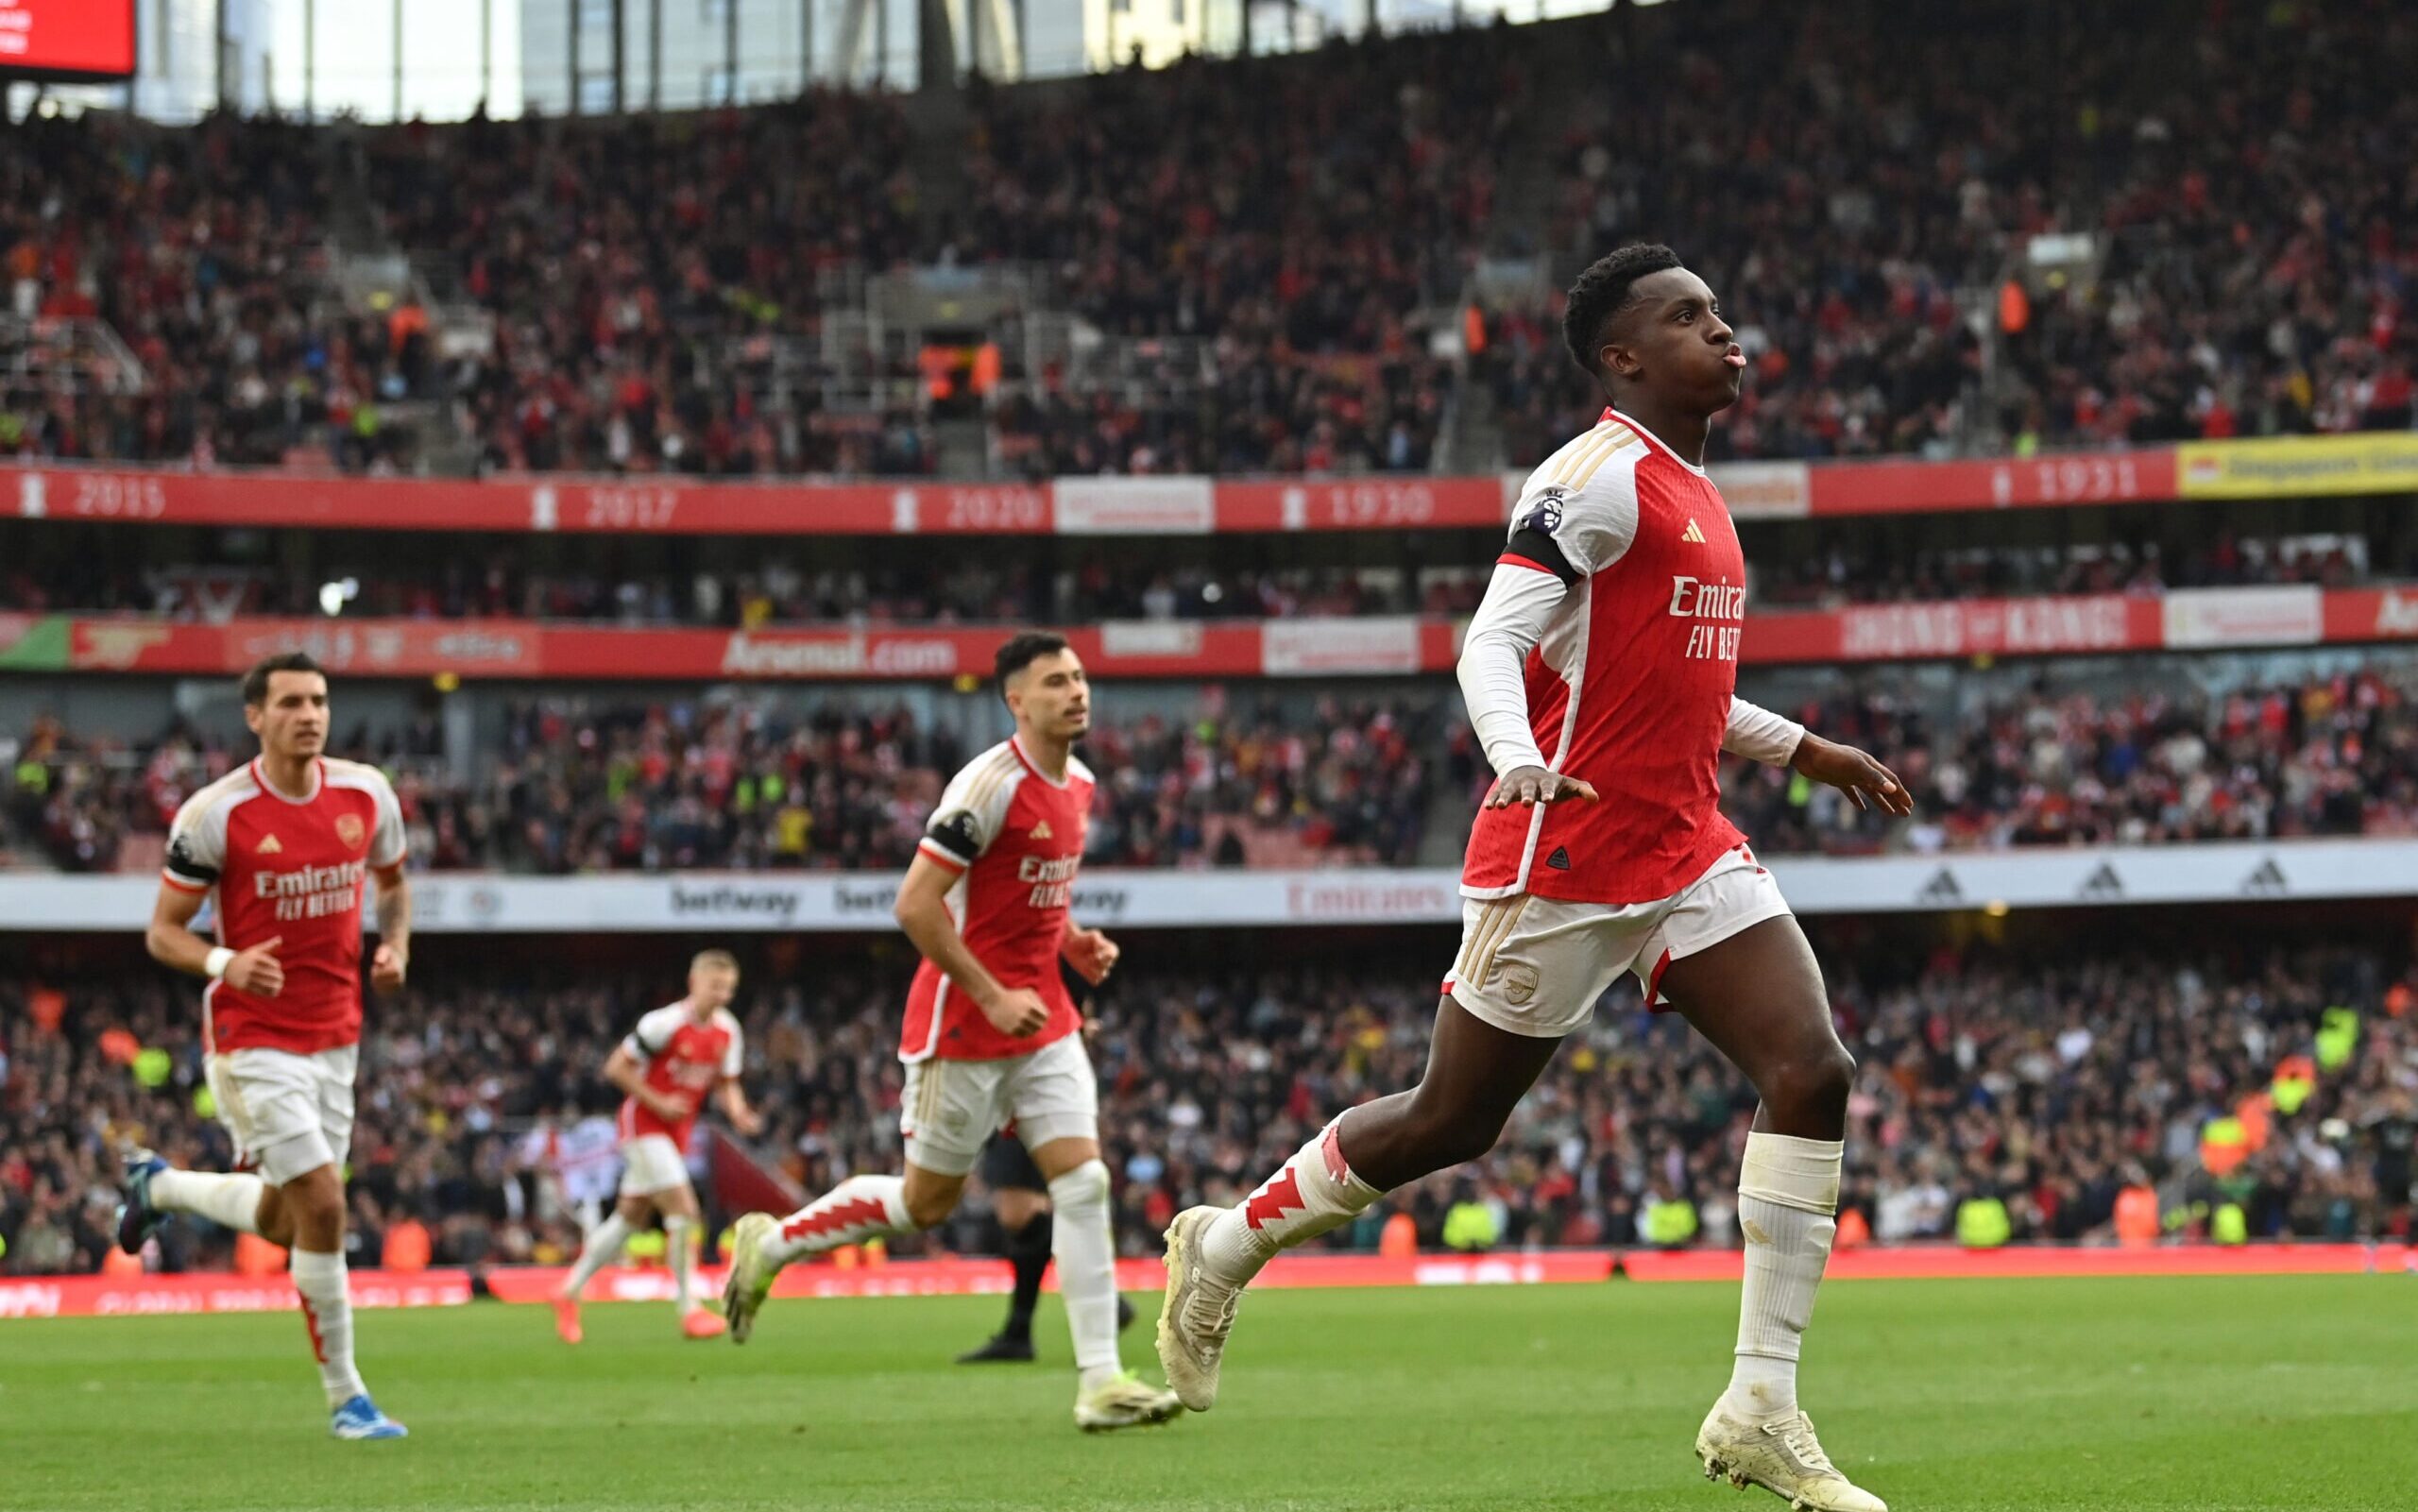 Arsenal vence no fim e reassume a liderança do Campeonato Inglês